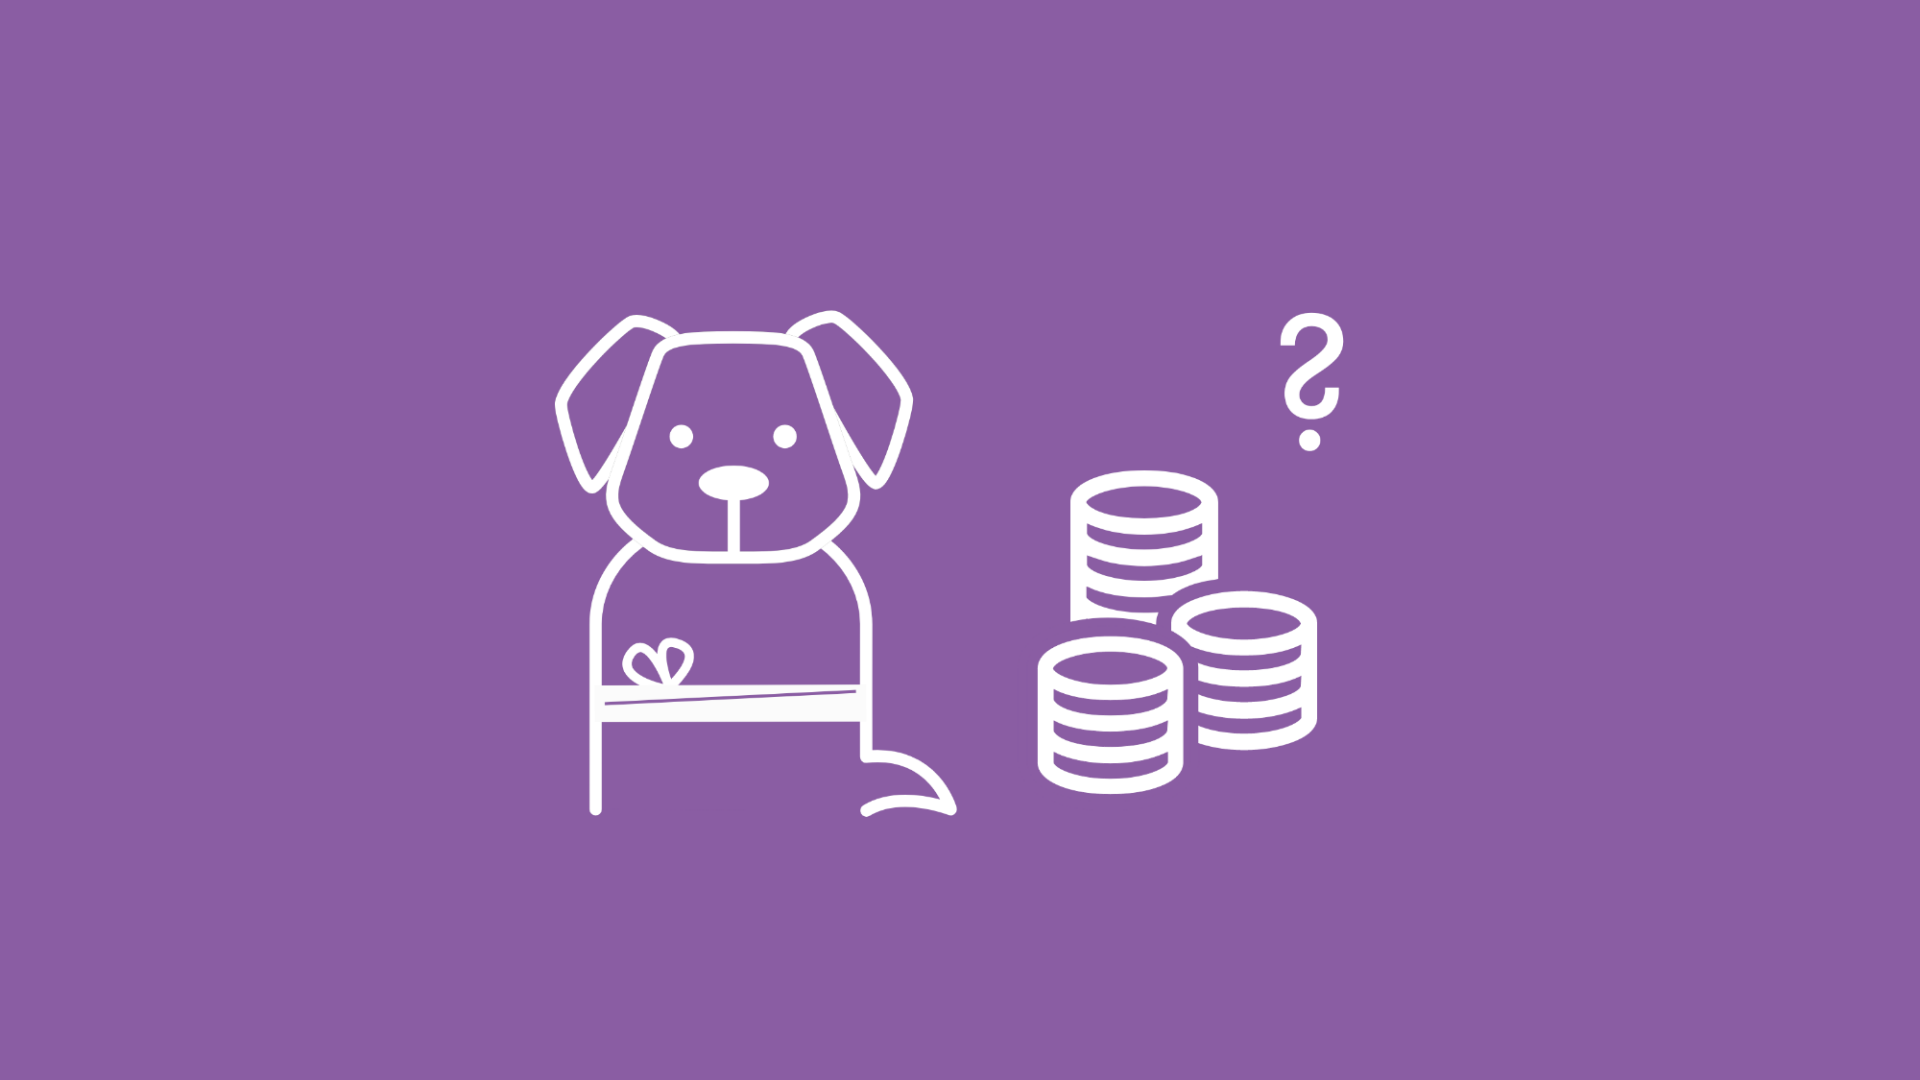 Hund, neben dem ein Stapel von Münzen und ein Fragezeichen zu sehen sind.